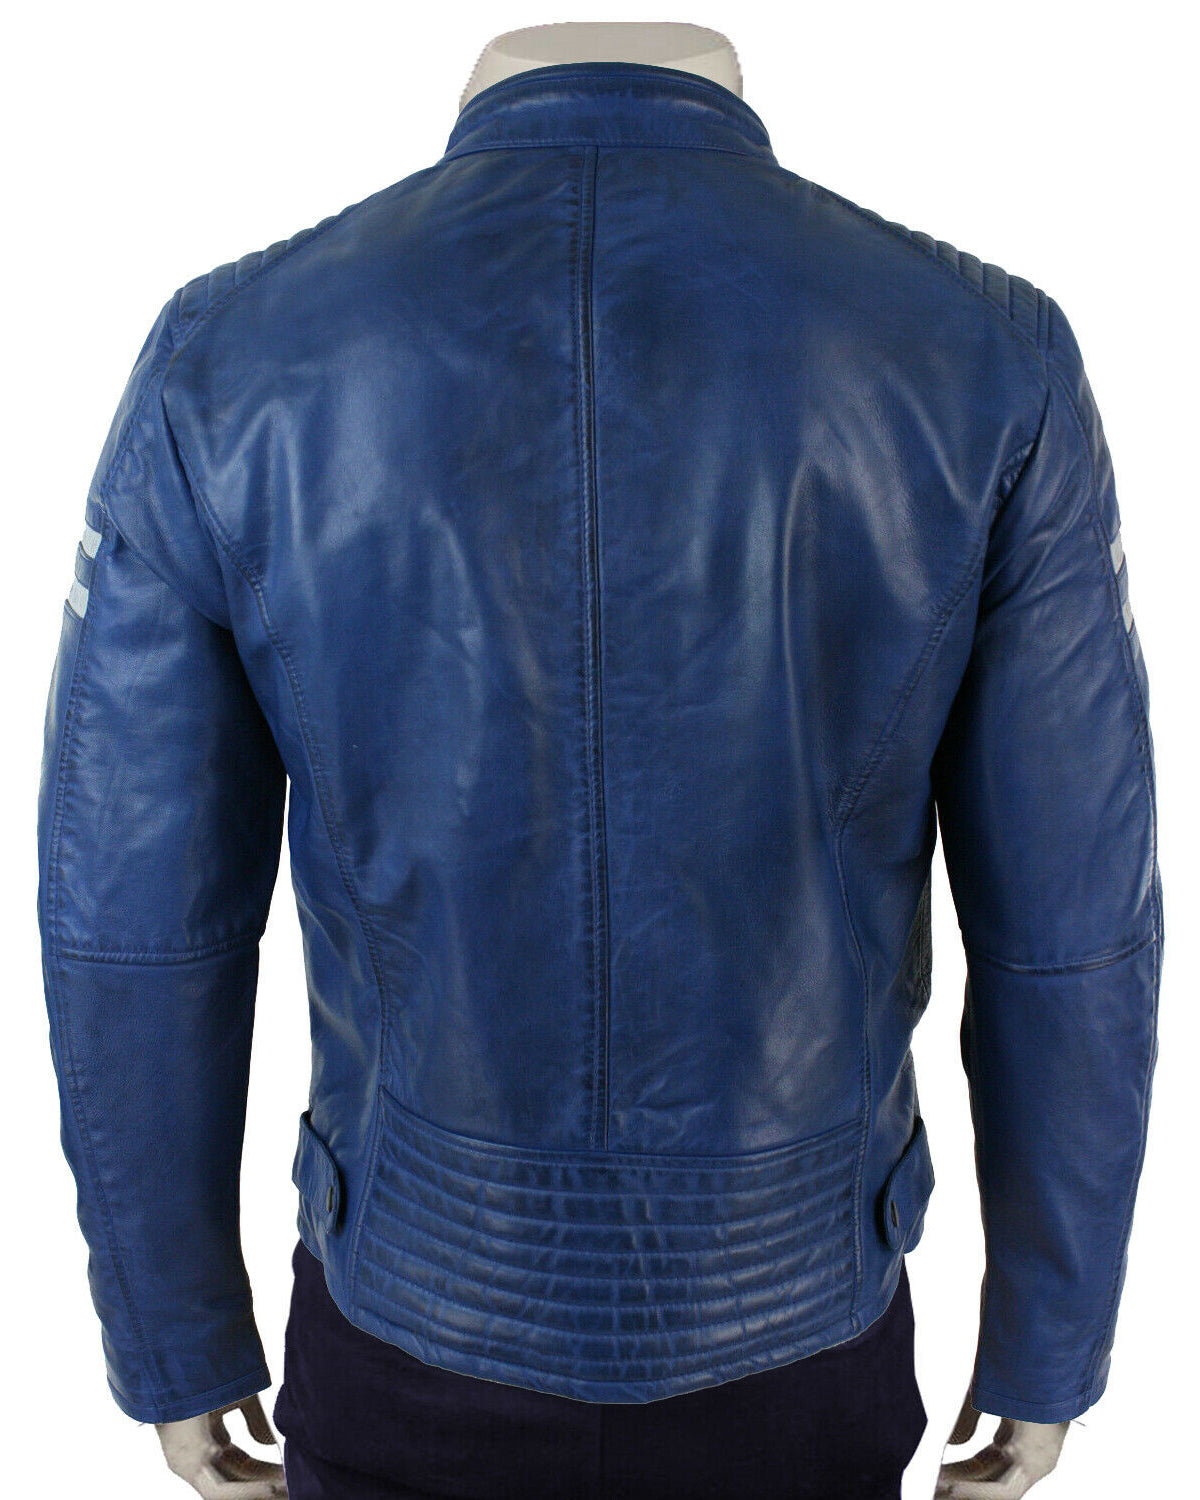 Mens Cafe Racer Blue biker jacket Leather Motorcycle Jackets